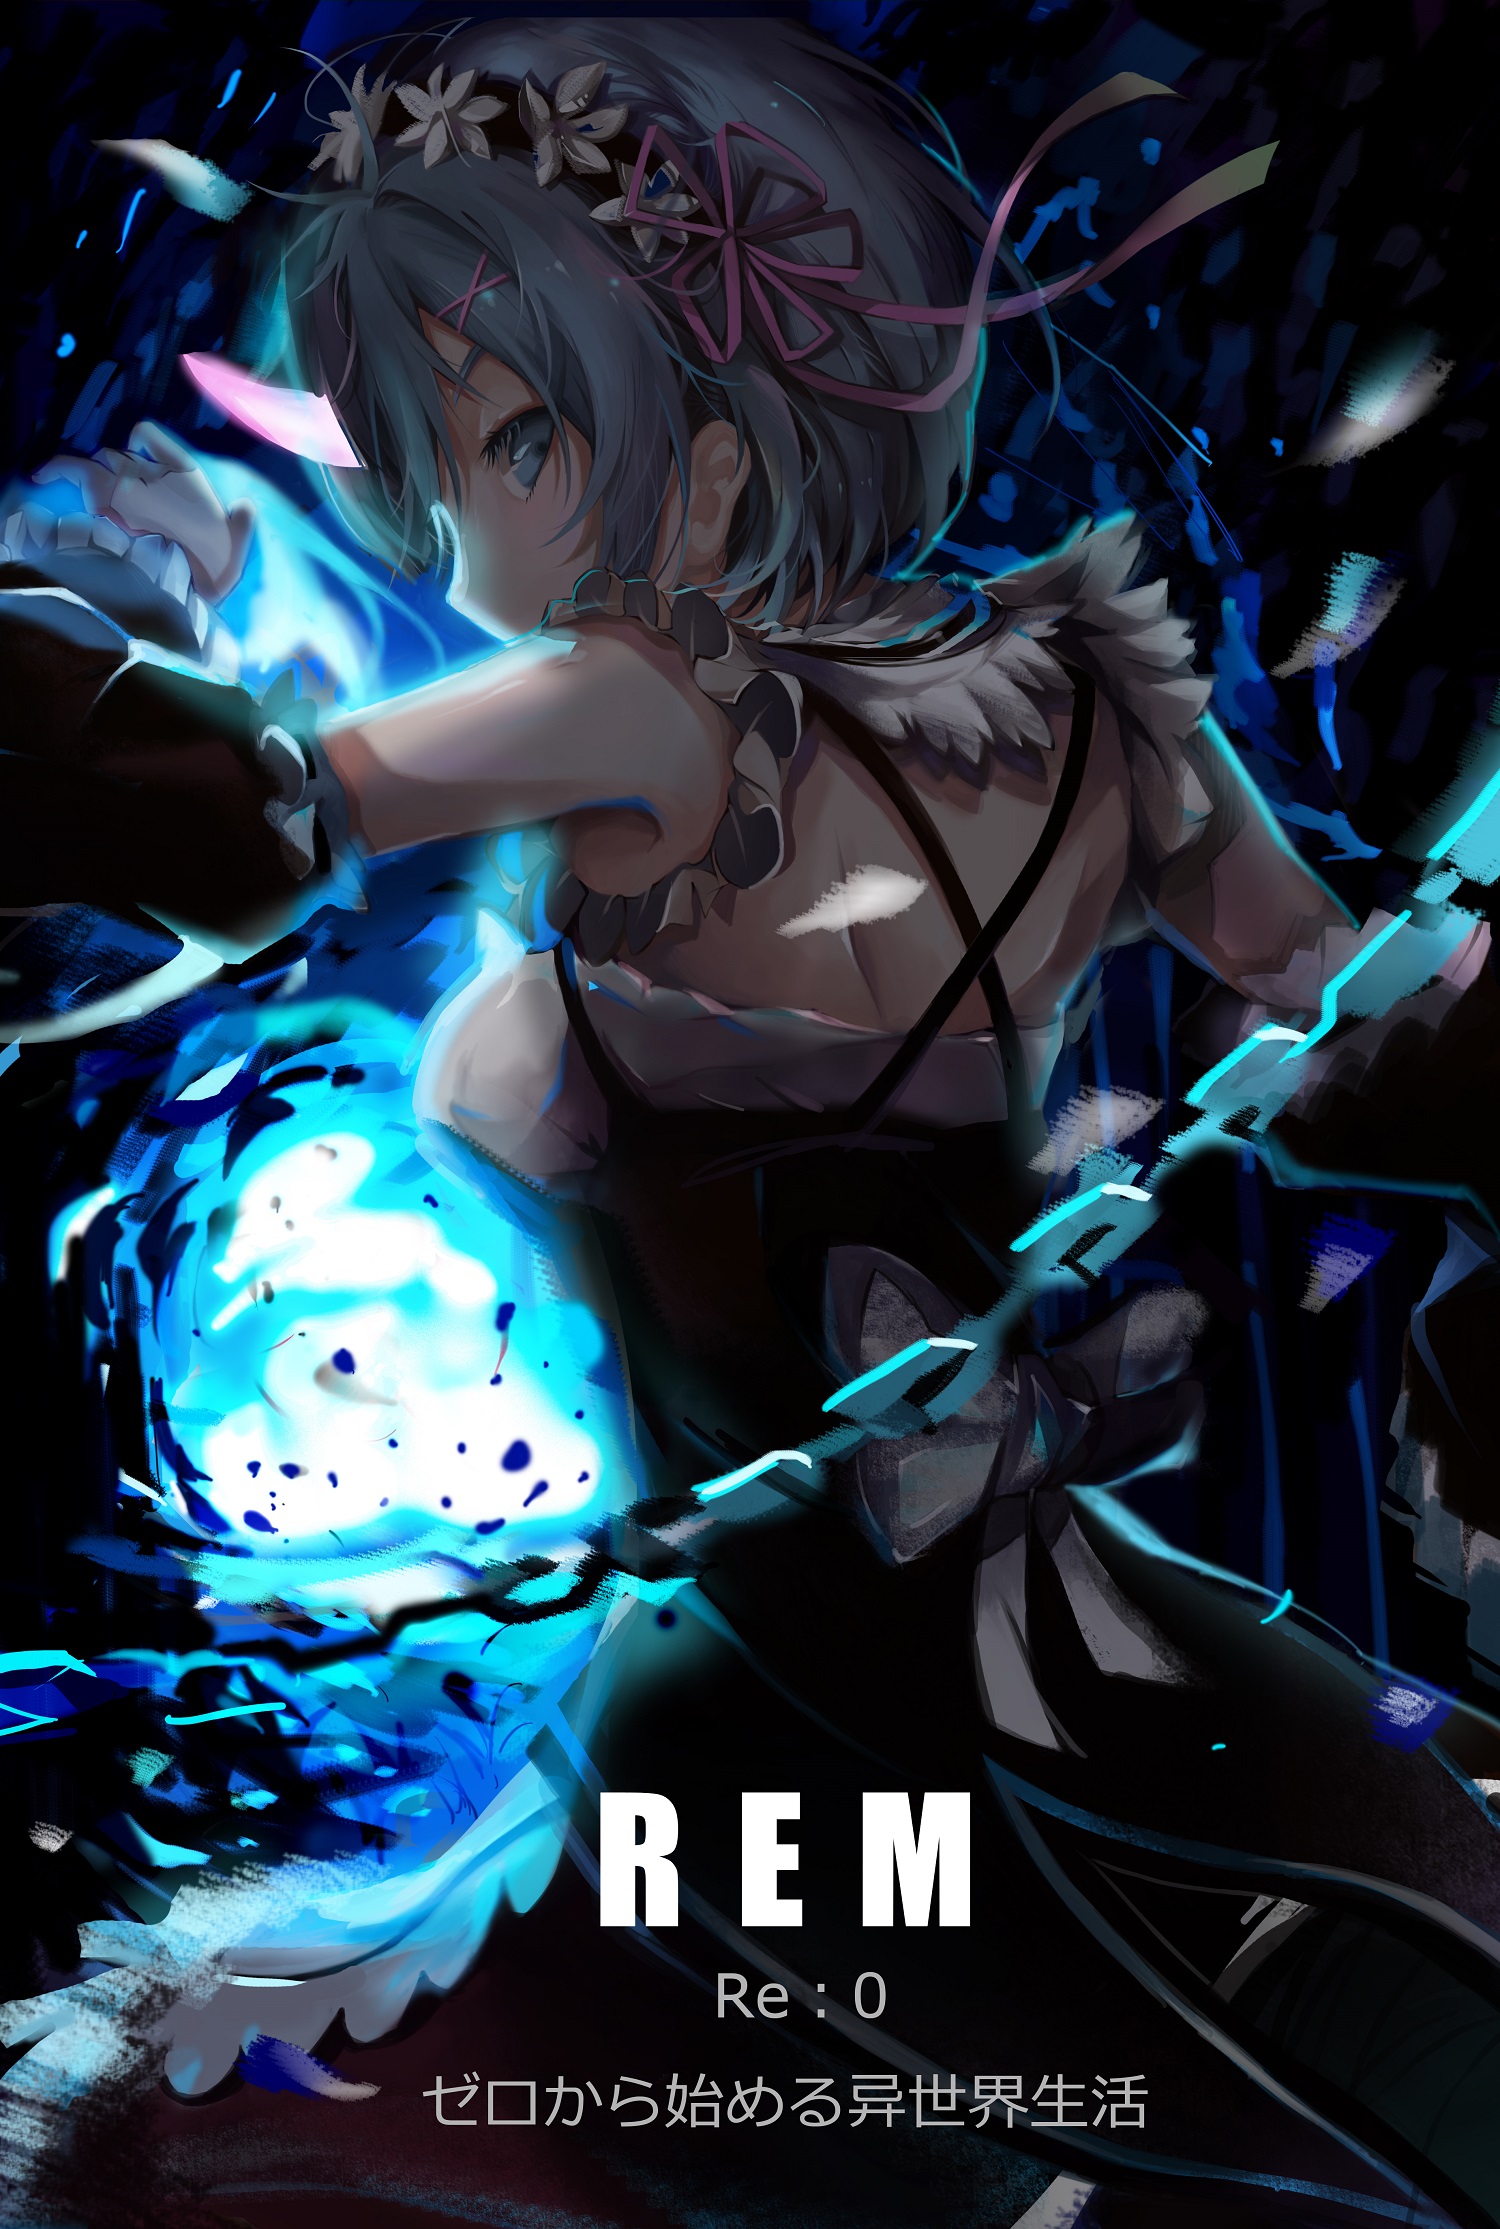 0 ゼロから始める异世界生活 Anime Cg Artwork Black Hair Computer - Re Zero Rem Oni - HD Wallpaper 